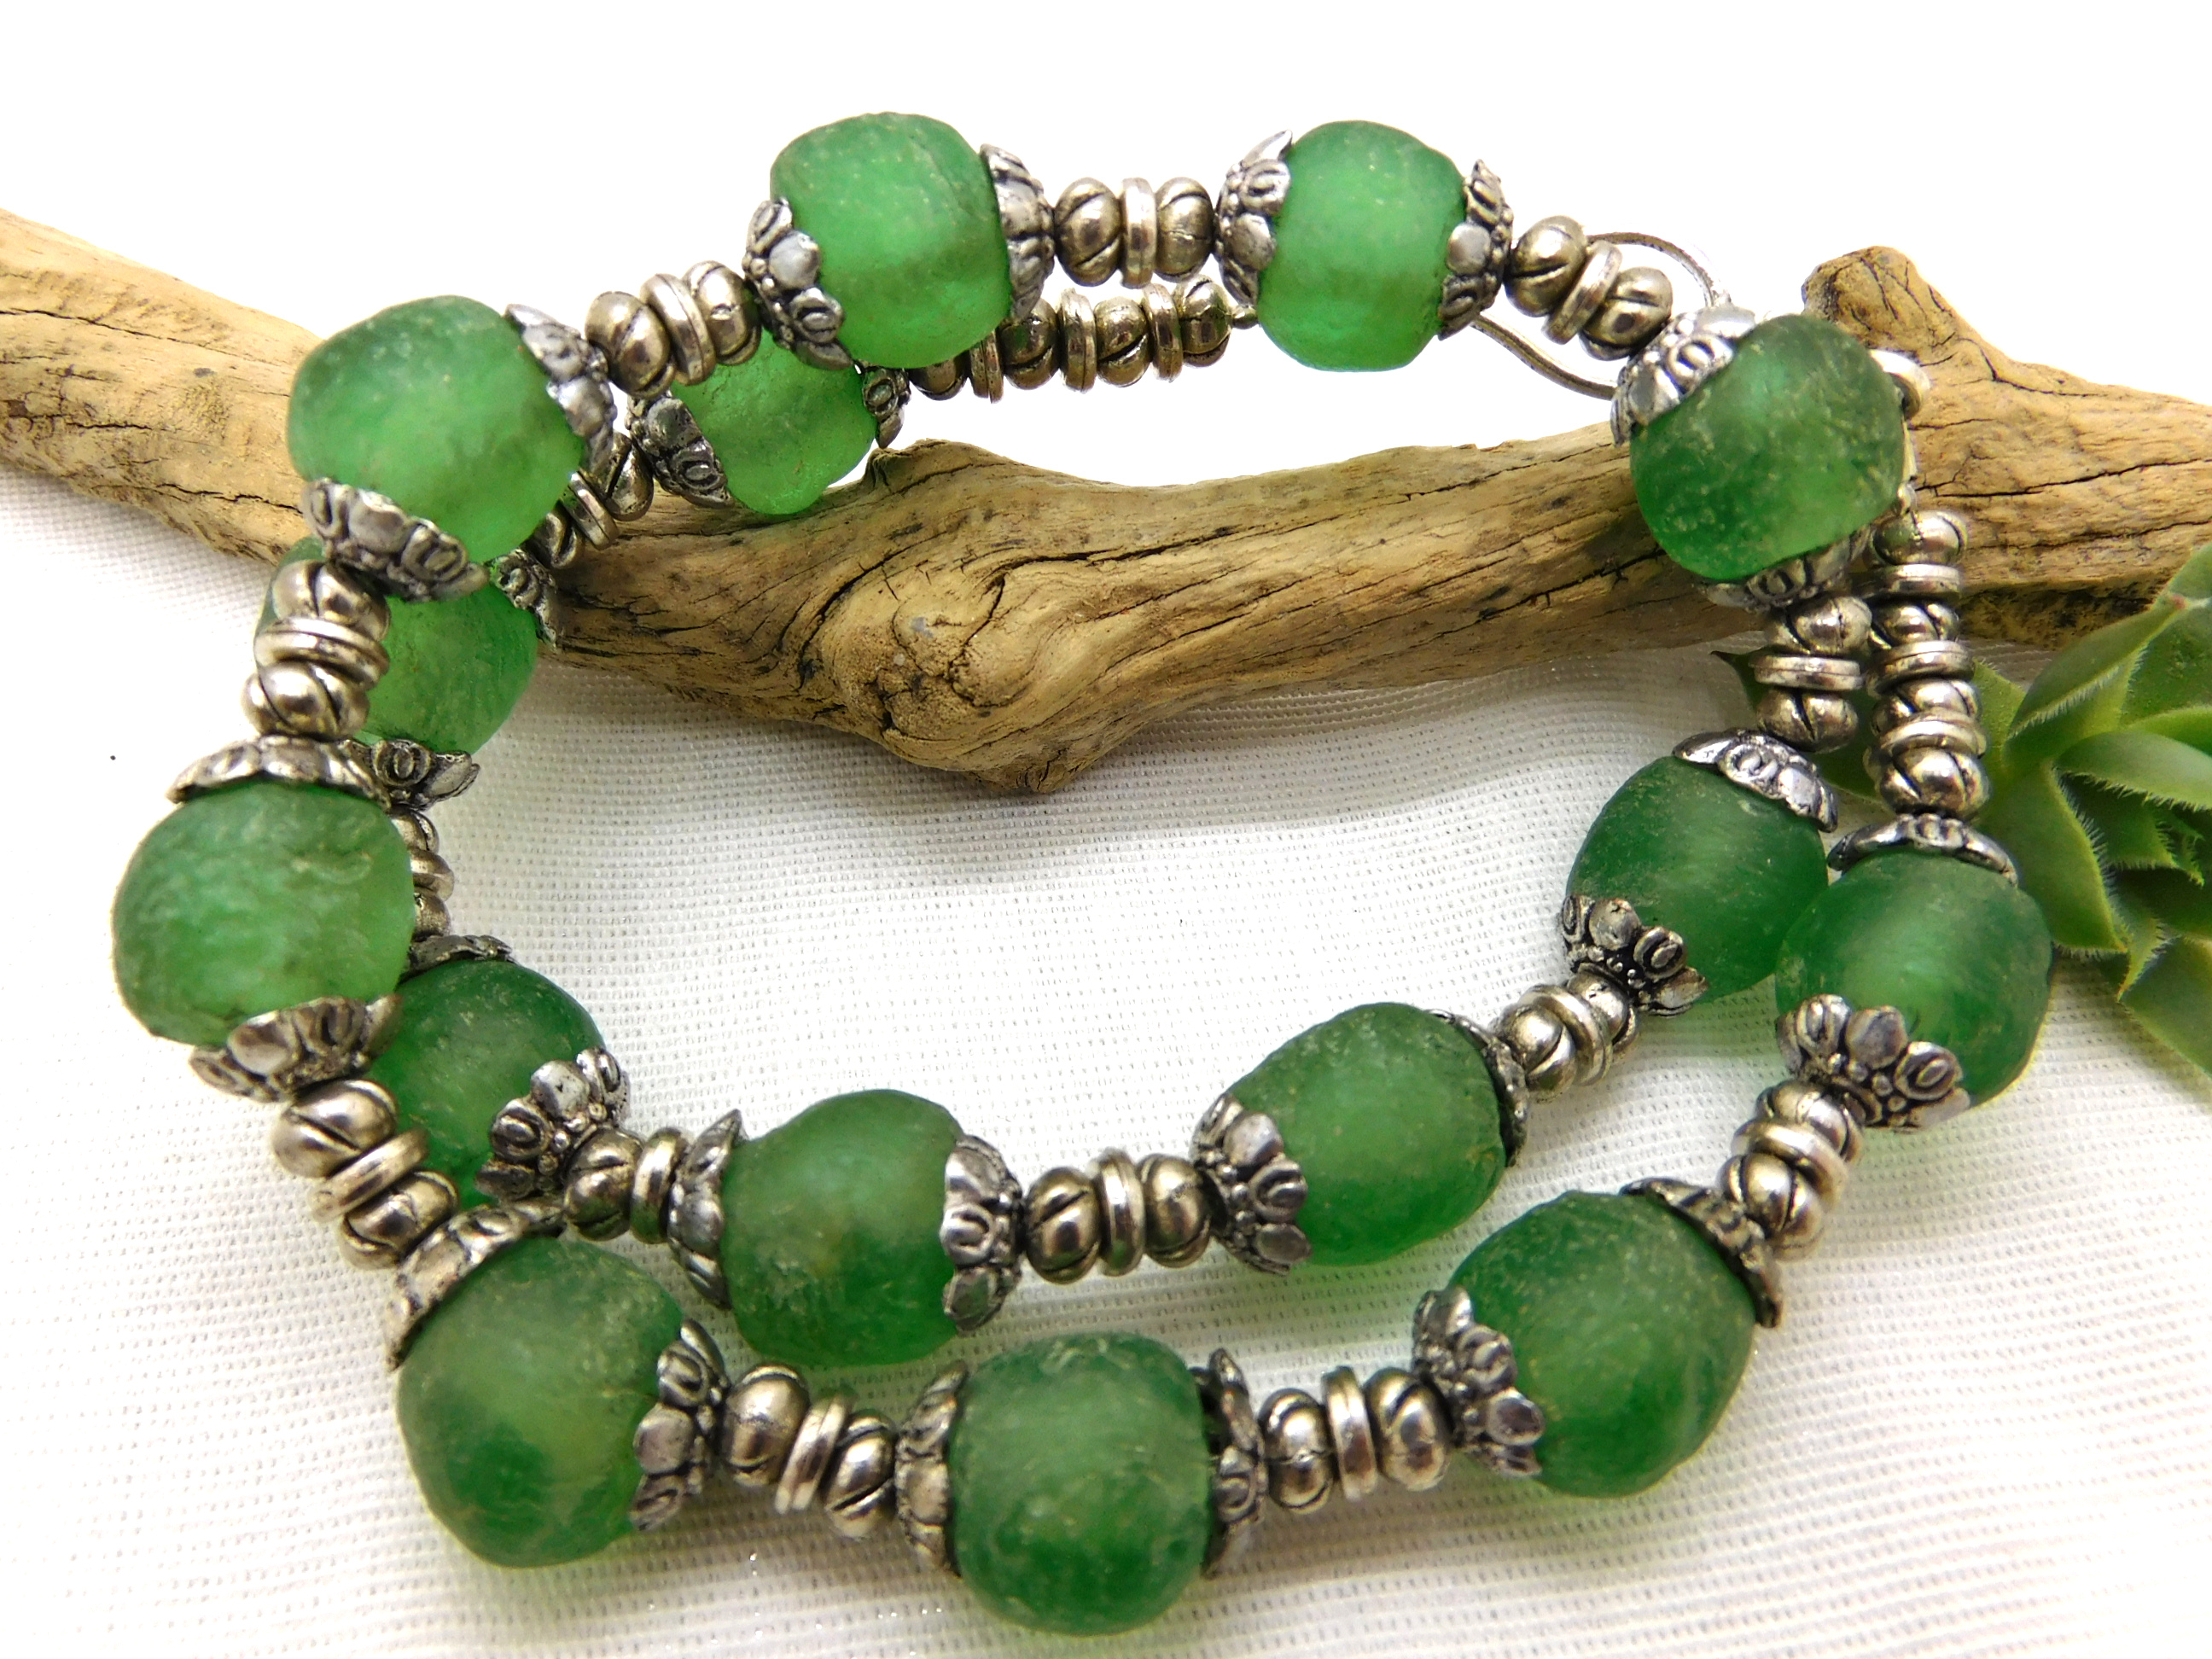 Halskette - afrikanische Recyclingglas-Perlen - grün, silbern